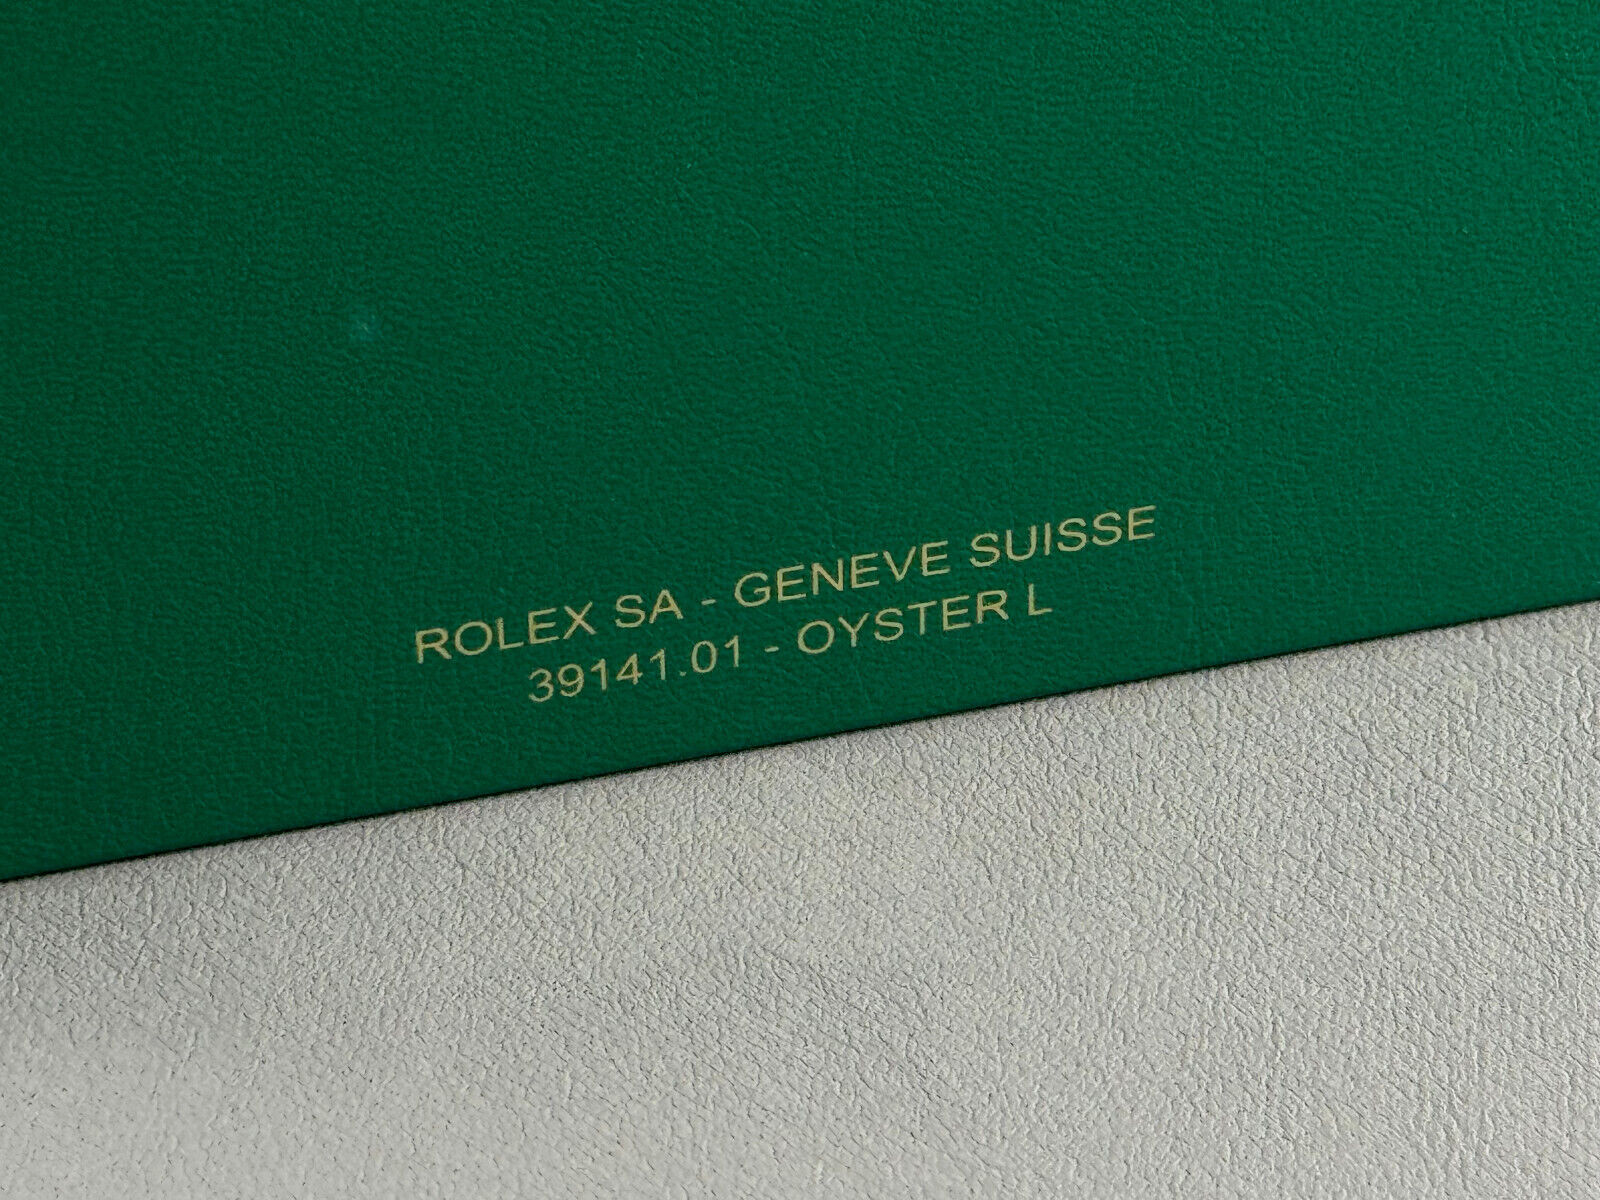 Rolex Oyster Box Größe L 39141.01